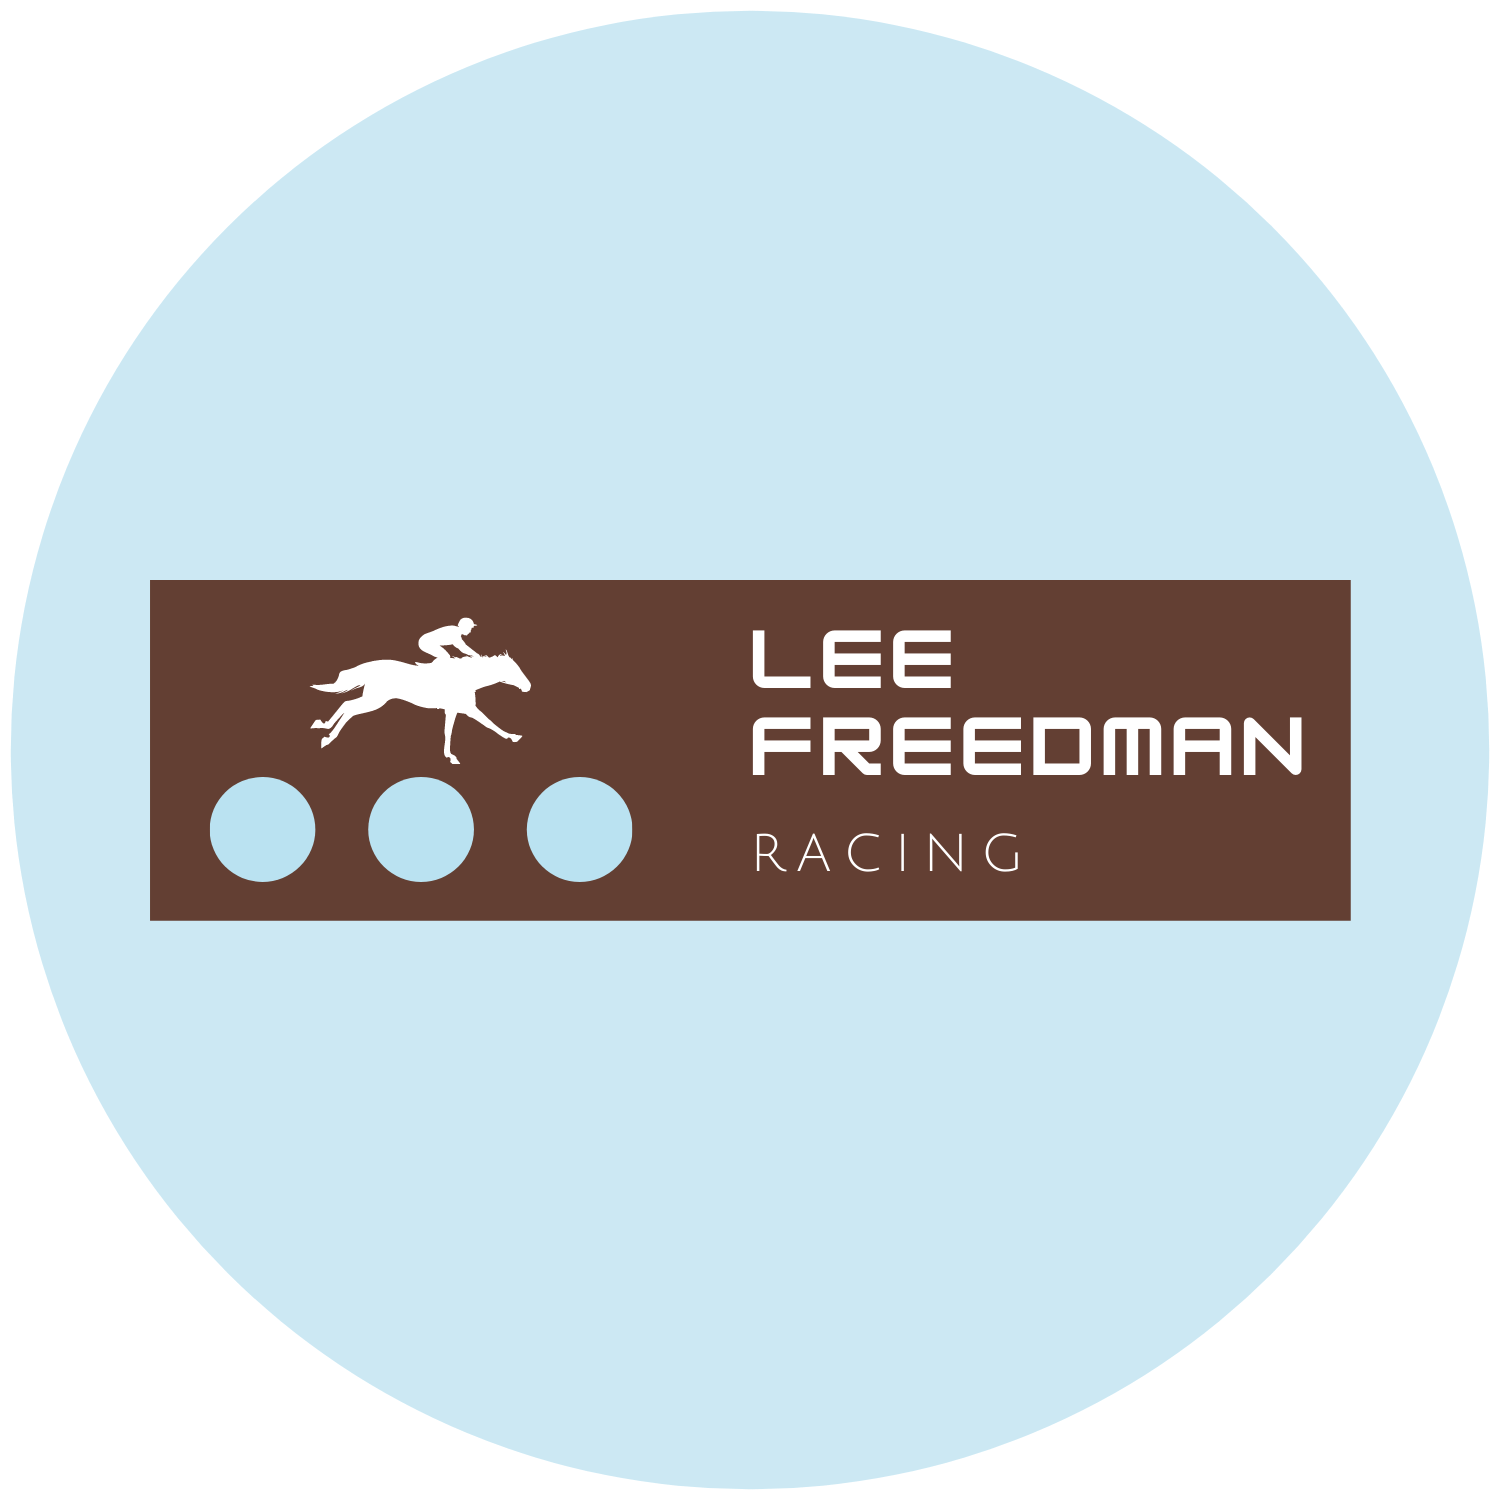 Lee Freedman Racing